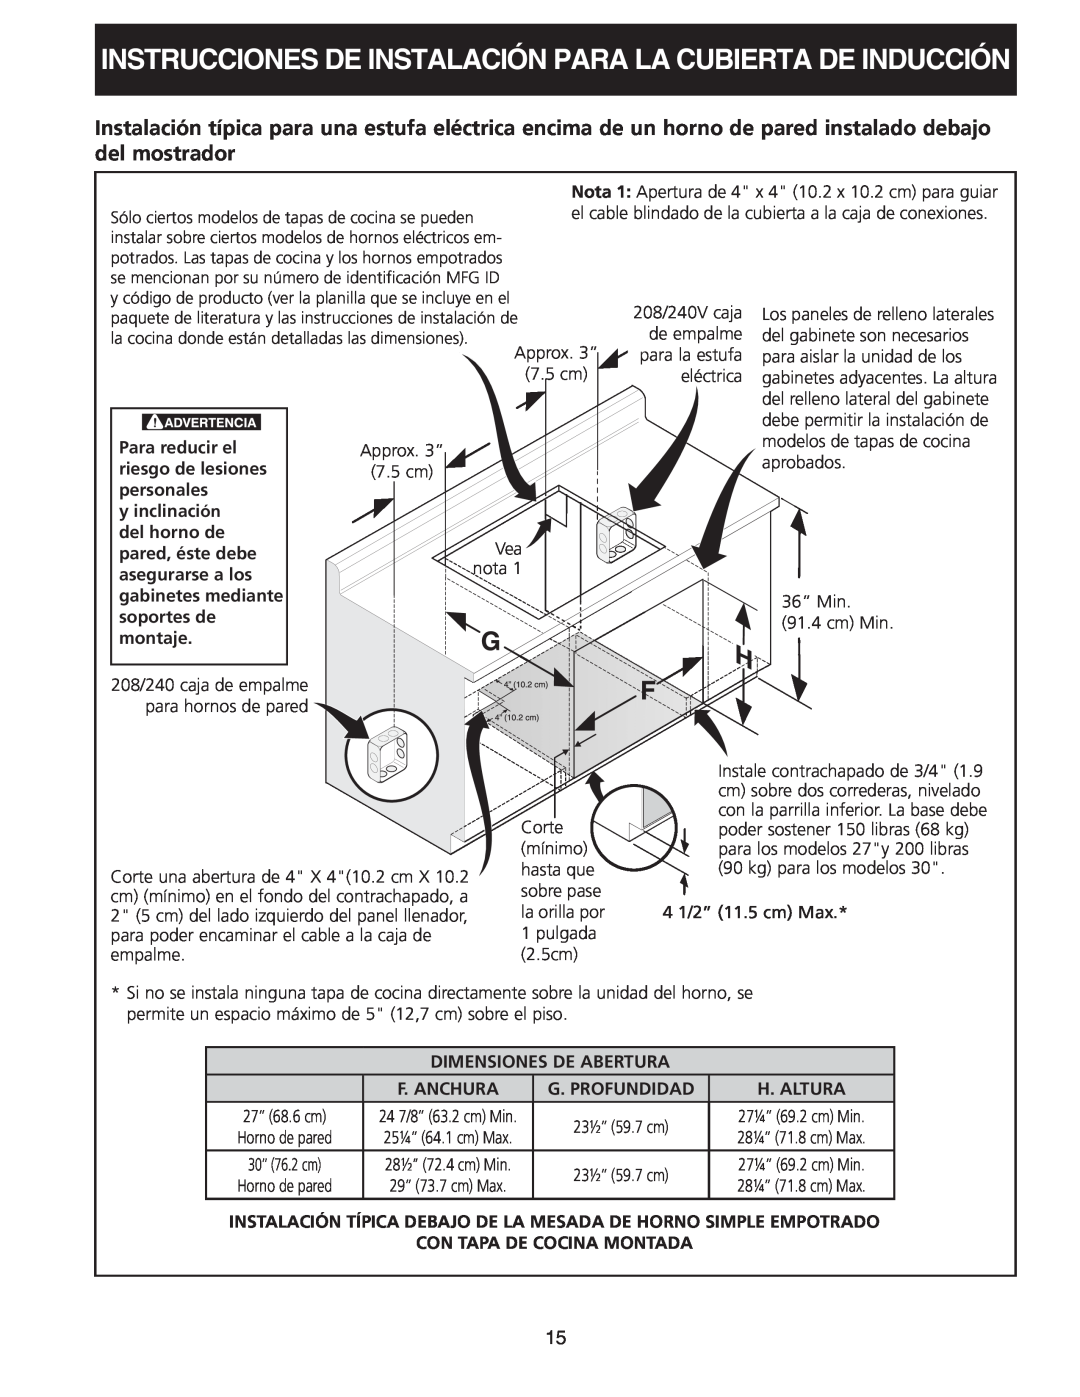 Frigidaire 318205412 installation instructions Instrucciones De Instalación Para La Cubierta De Inducción, Para reducir el 